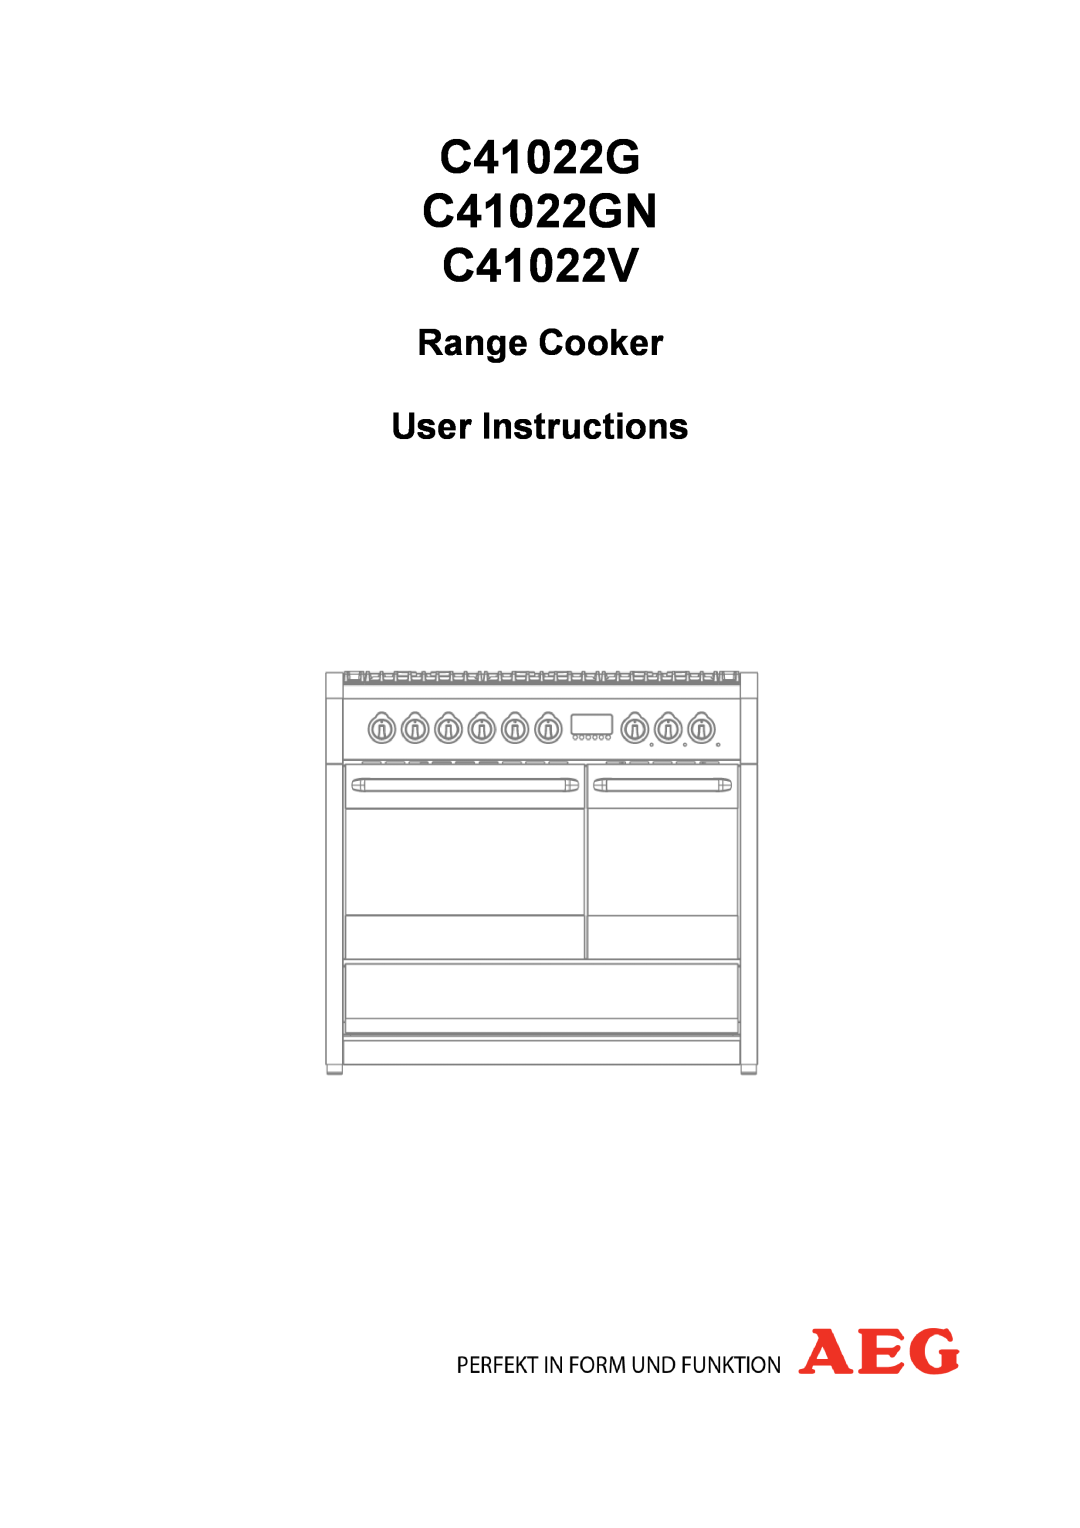 Electrolux manual C41022G C41022GN C41022V, Range Cooker User Instructions 